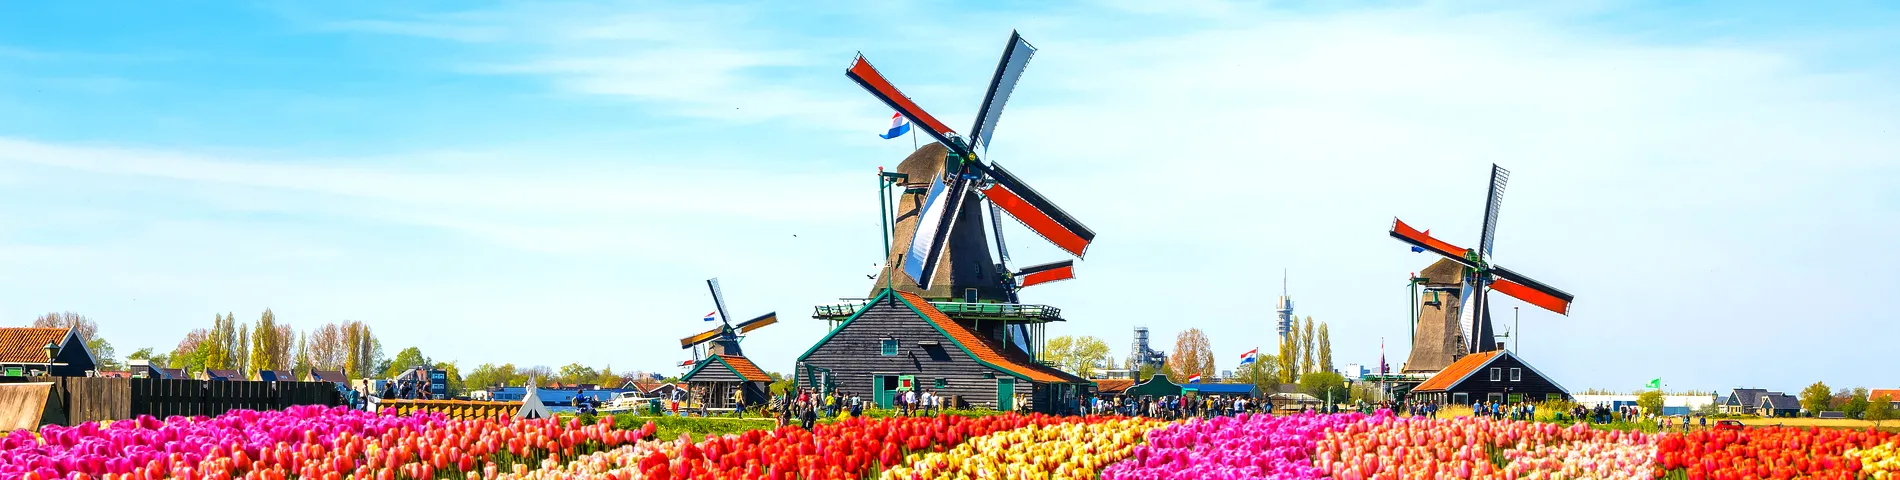 هولندا - الدورة العادية*